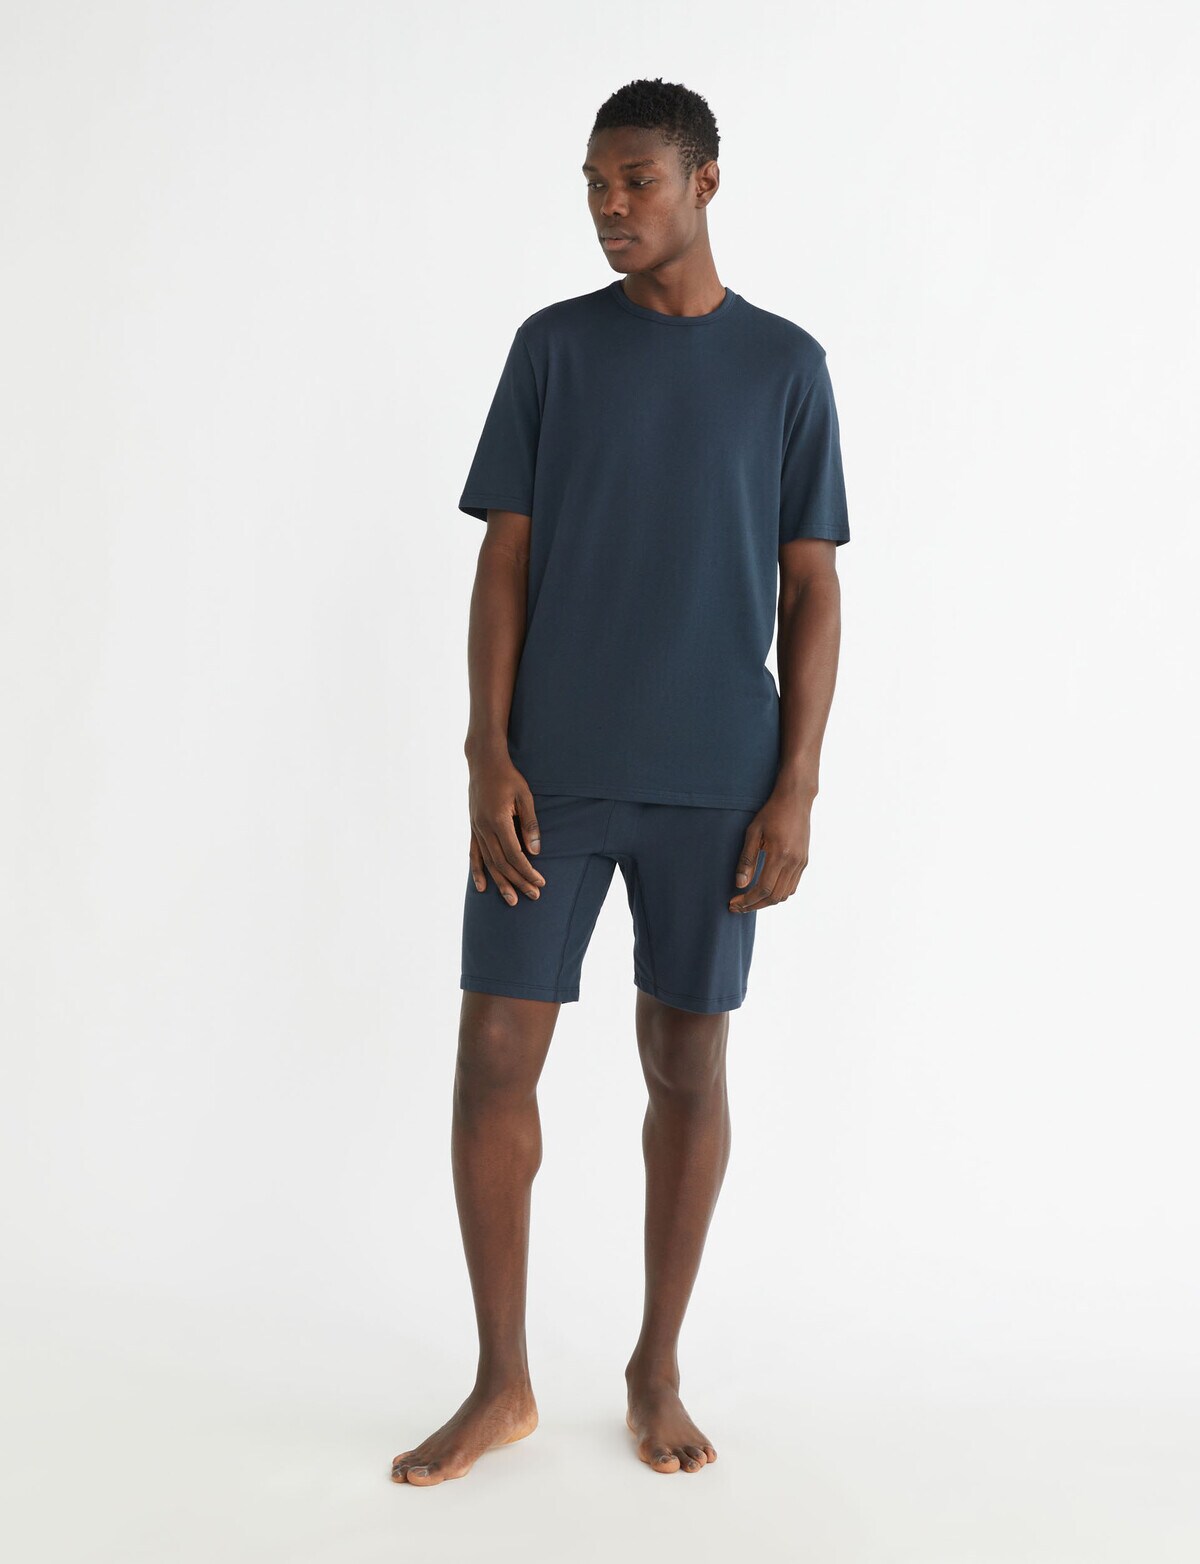 Calvin Klein Cotton Stretch Short Sleeve Top, Blueberry - Sleepwear